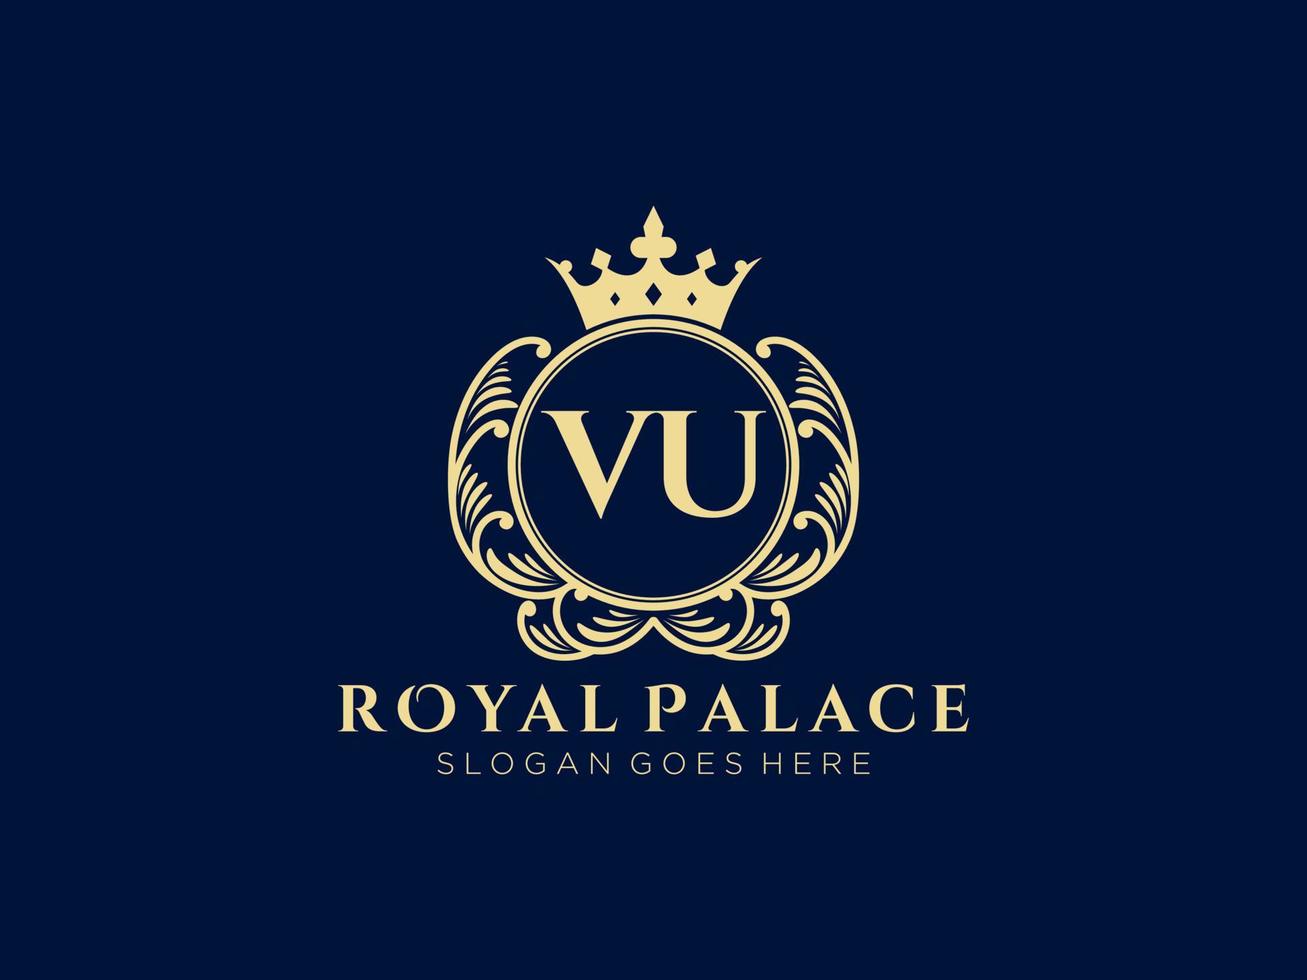 brief vu antiek Koninklijk luxe Victoriaans logo met sier- kader. vector